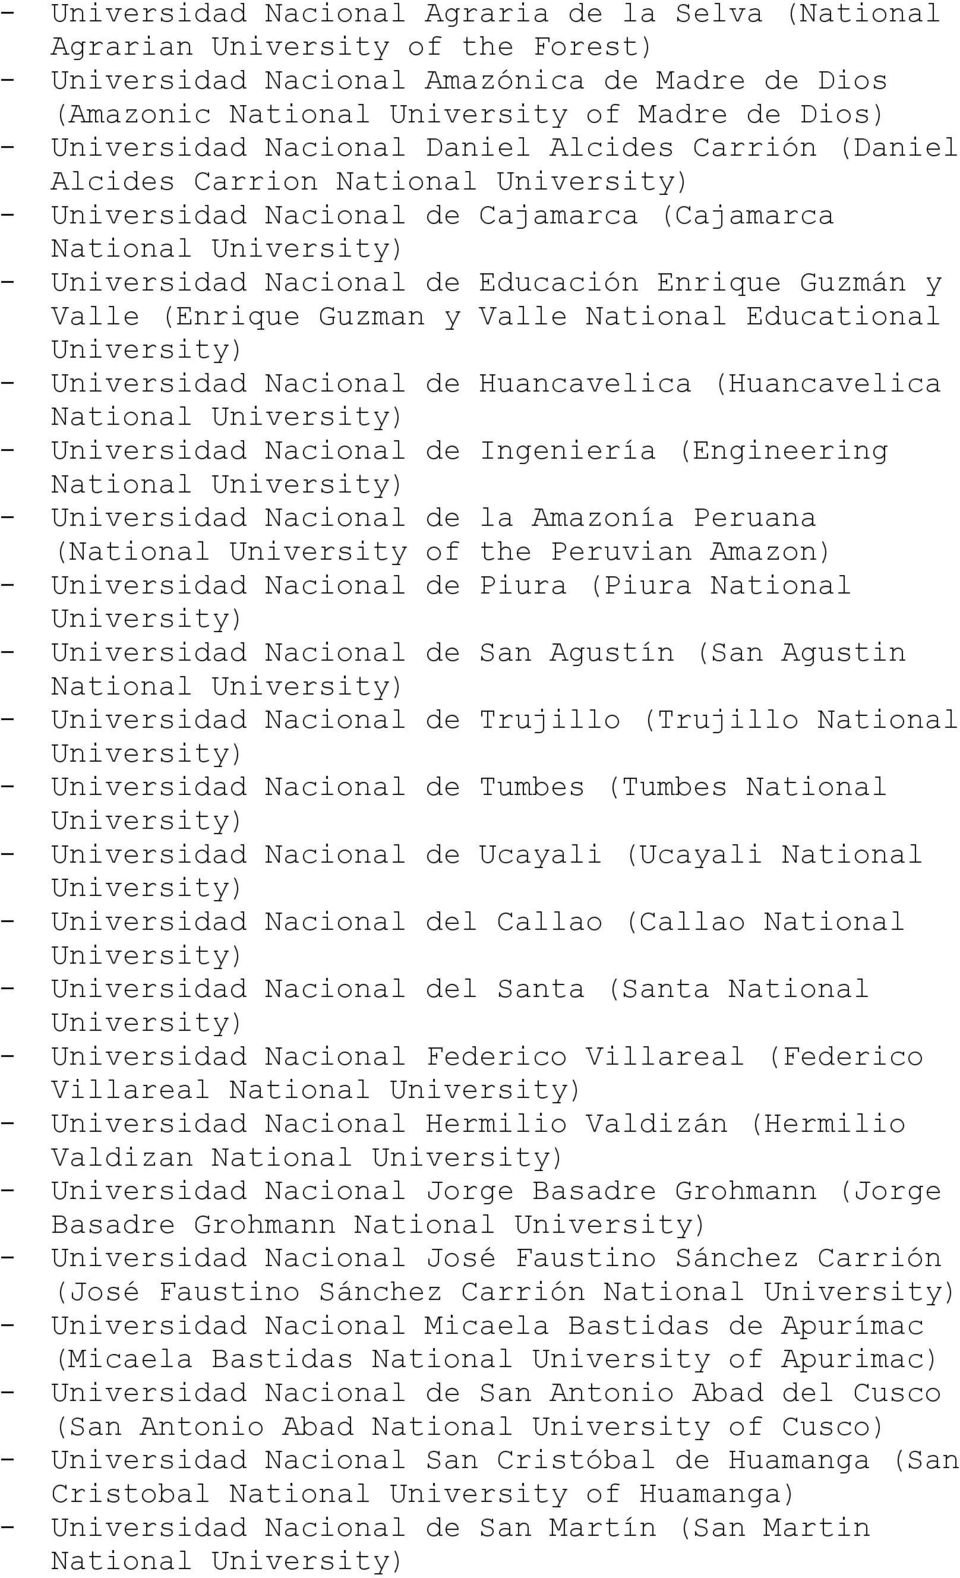 Valle (Enrique Guzman y Valle National Educational University) - Universidad Nacional de Huancavelica (Huancavelica National University) - Universidad Nacional de Ingeniería (Engineering National